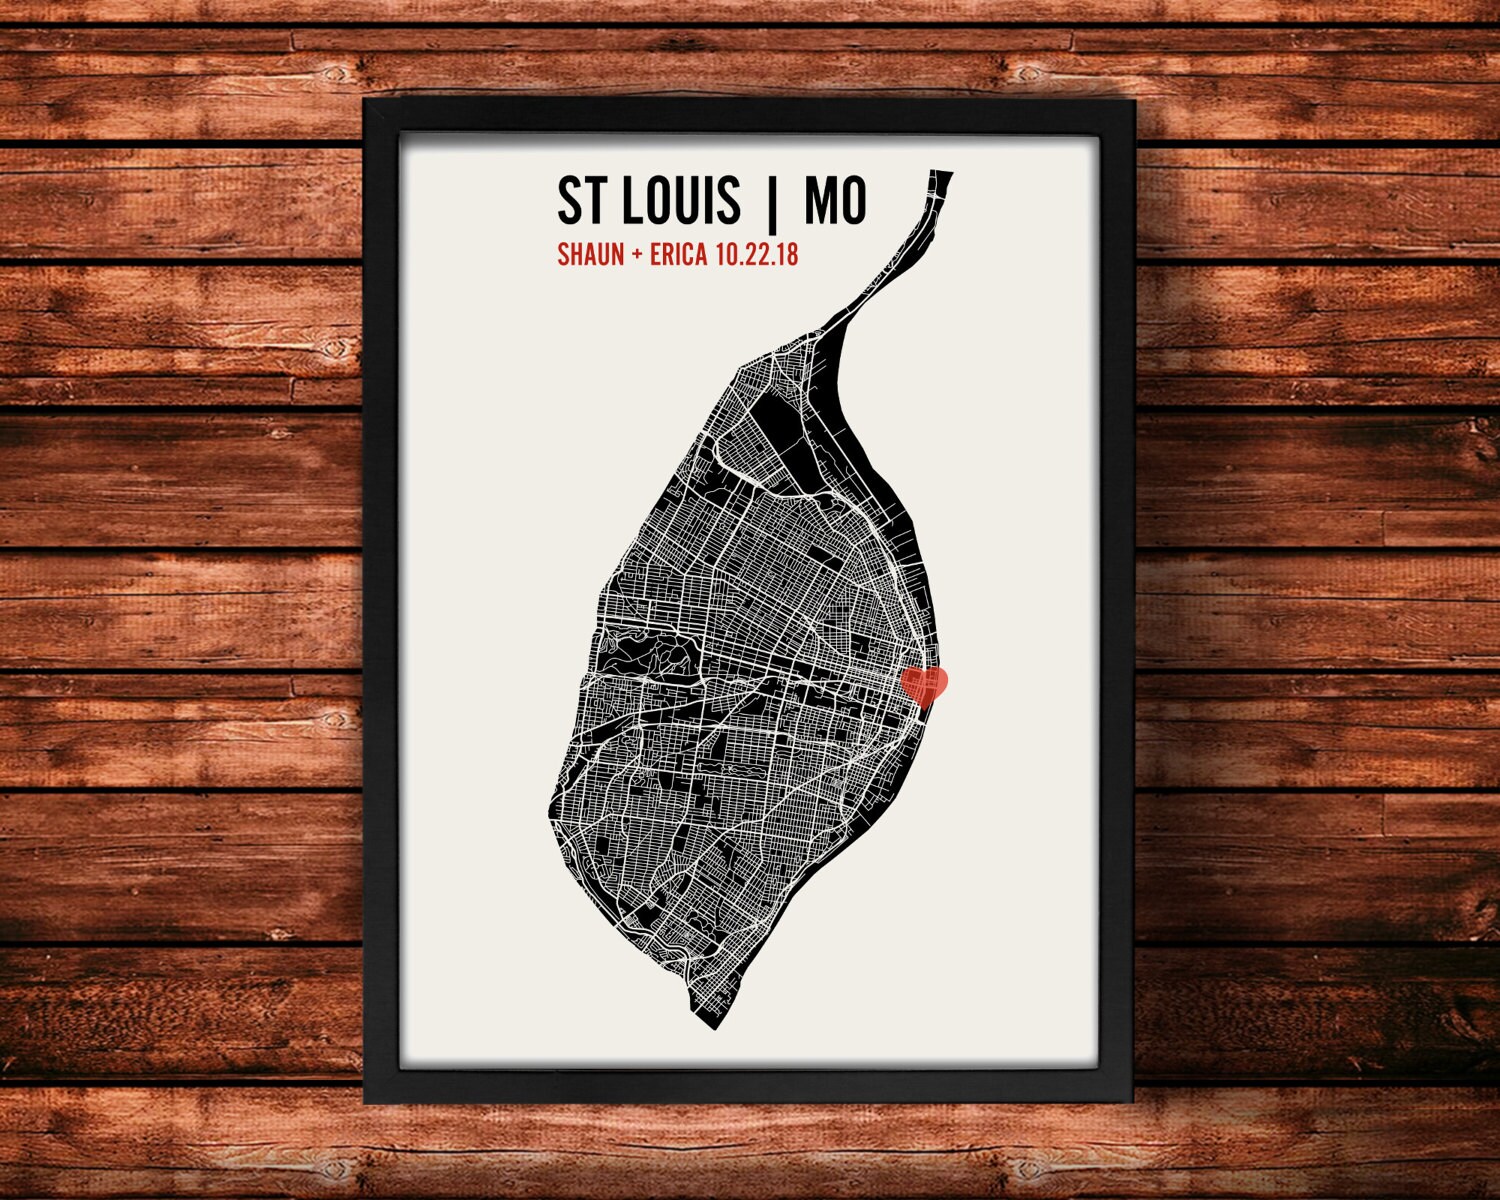 St. Louis Blues Logo, 3D CAD Model Library